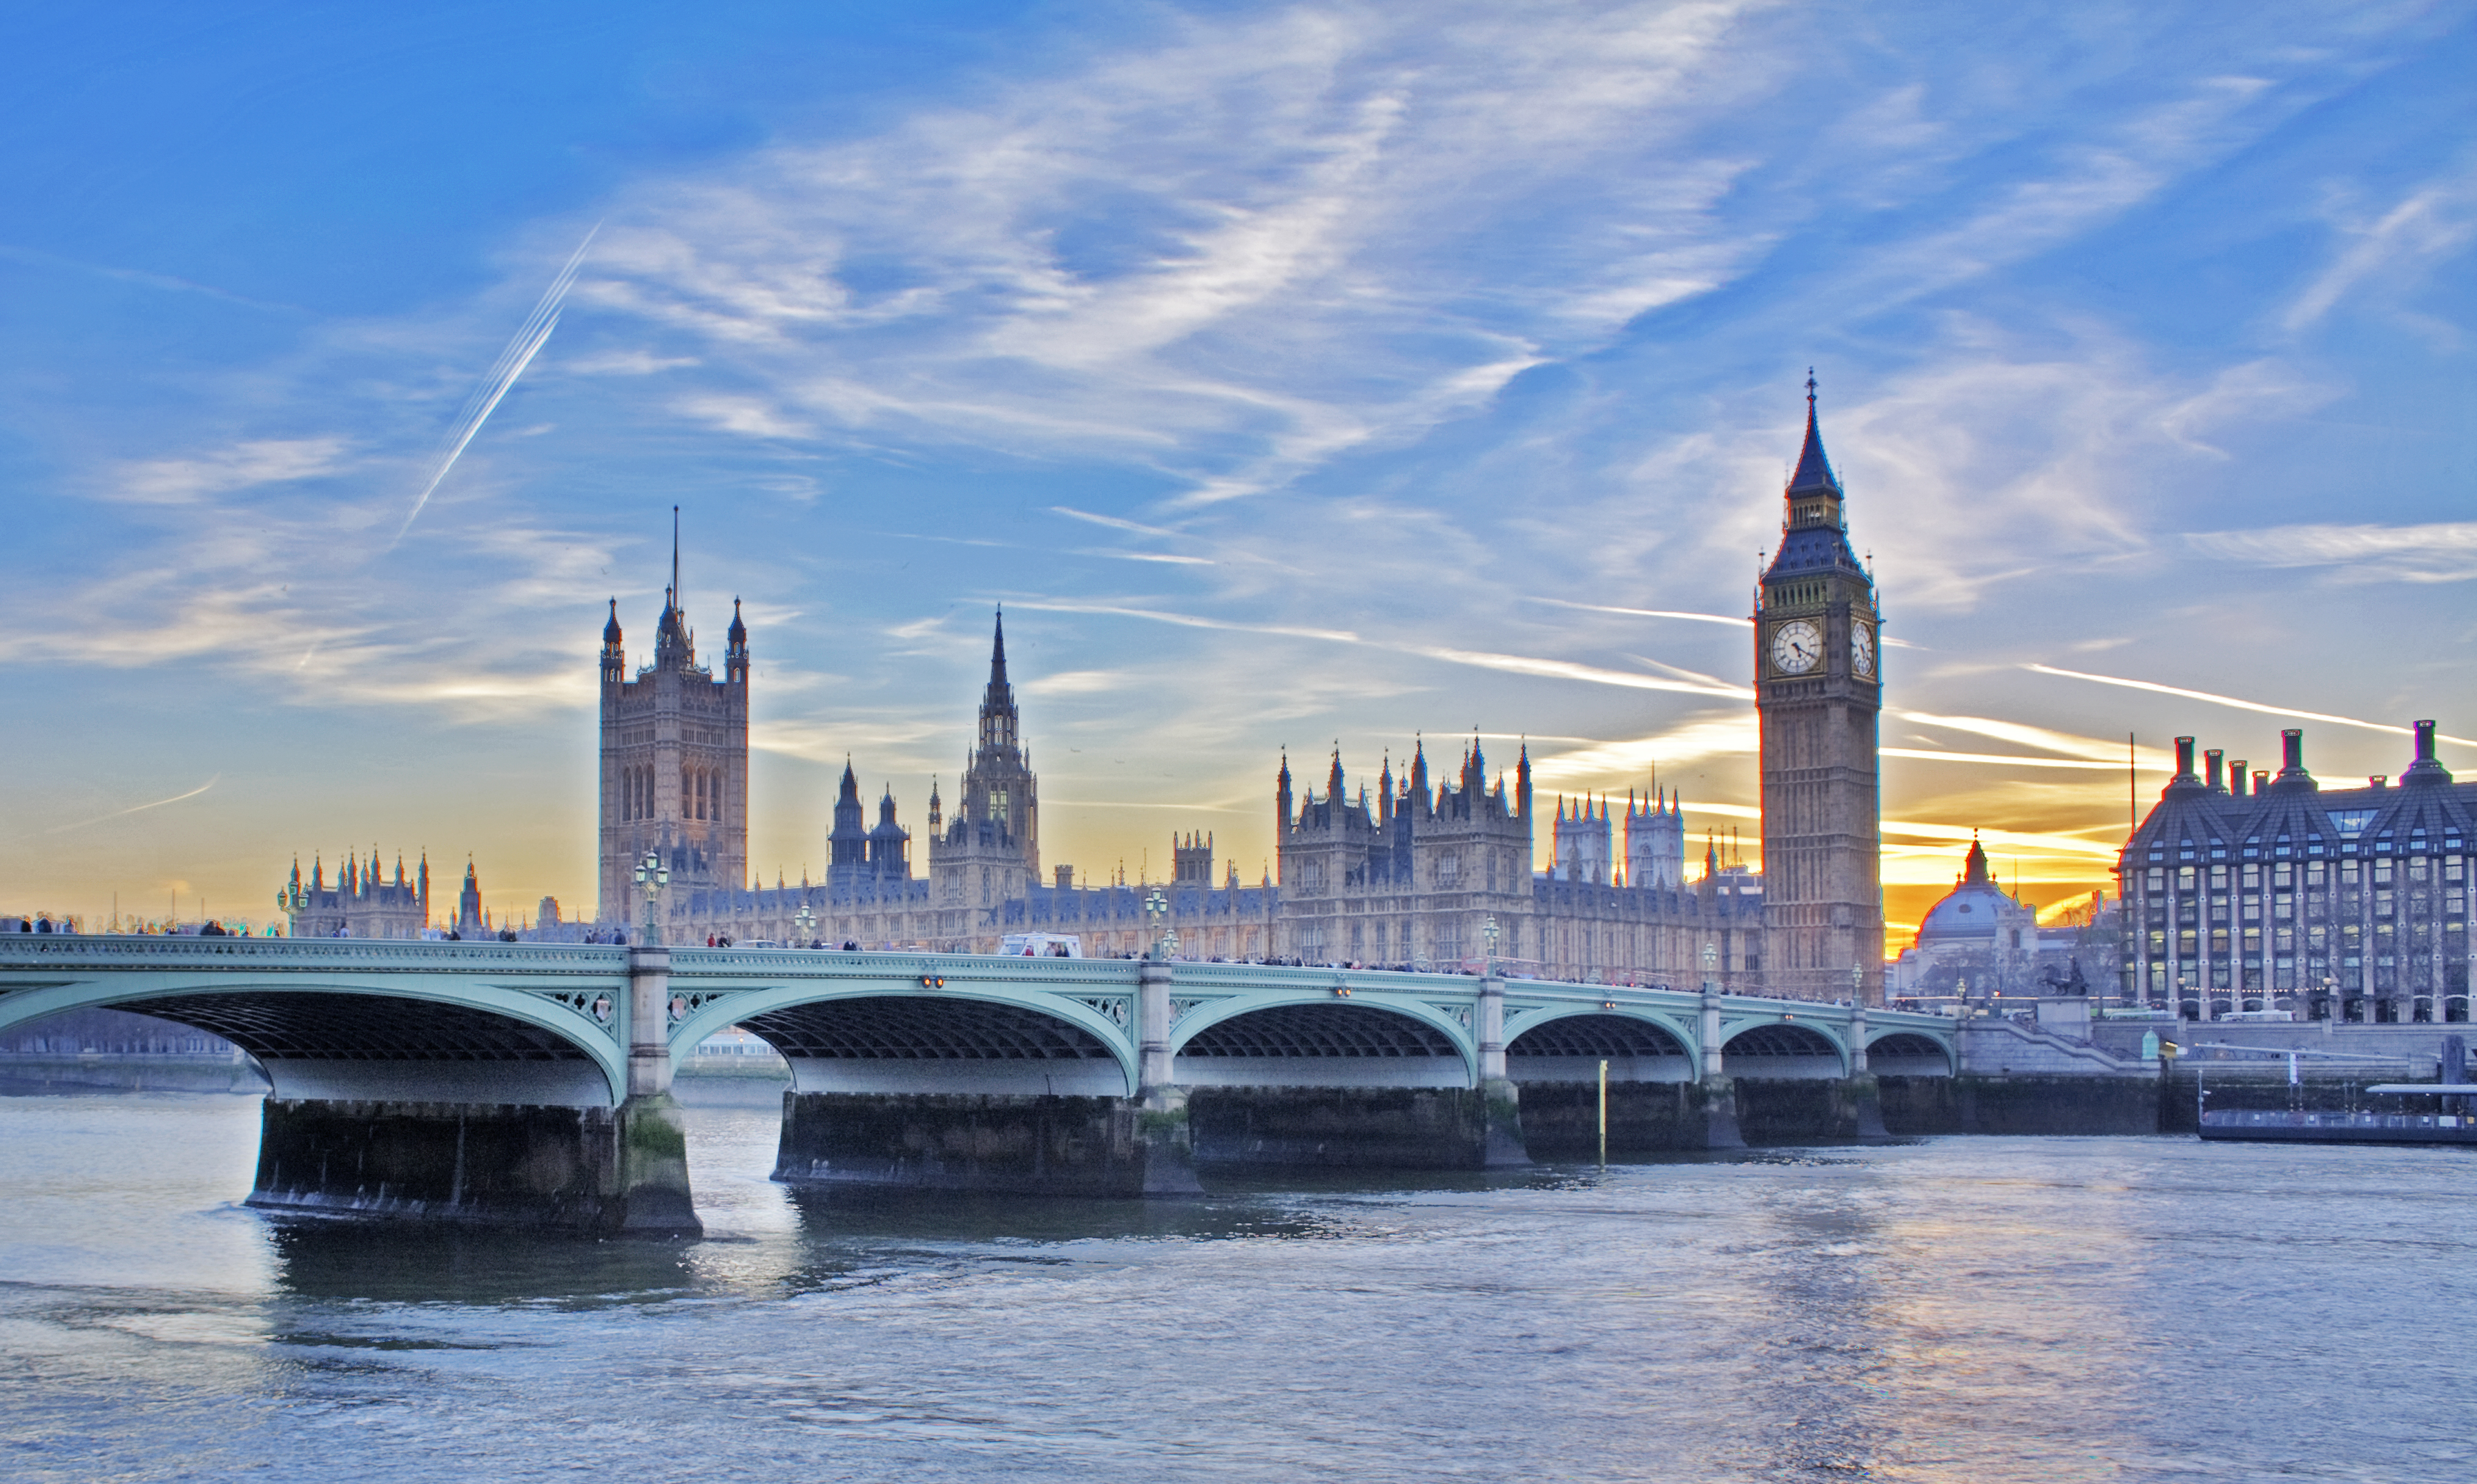 フリー画像 人工風景 建造物 建築物 橋の風景 ビッグ ベン ウェストミンスター宮殿 世界遺産 城 宮殿 イギリス風景 ロンドン フリー素材 画像素材 なら 無料 フリー写真素材のフリーフォト